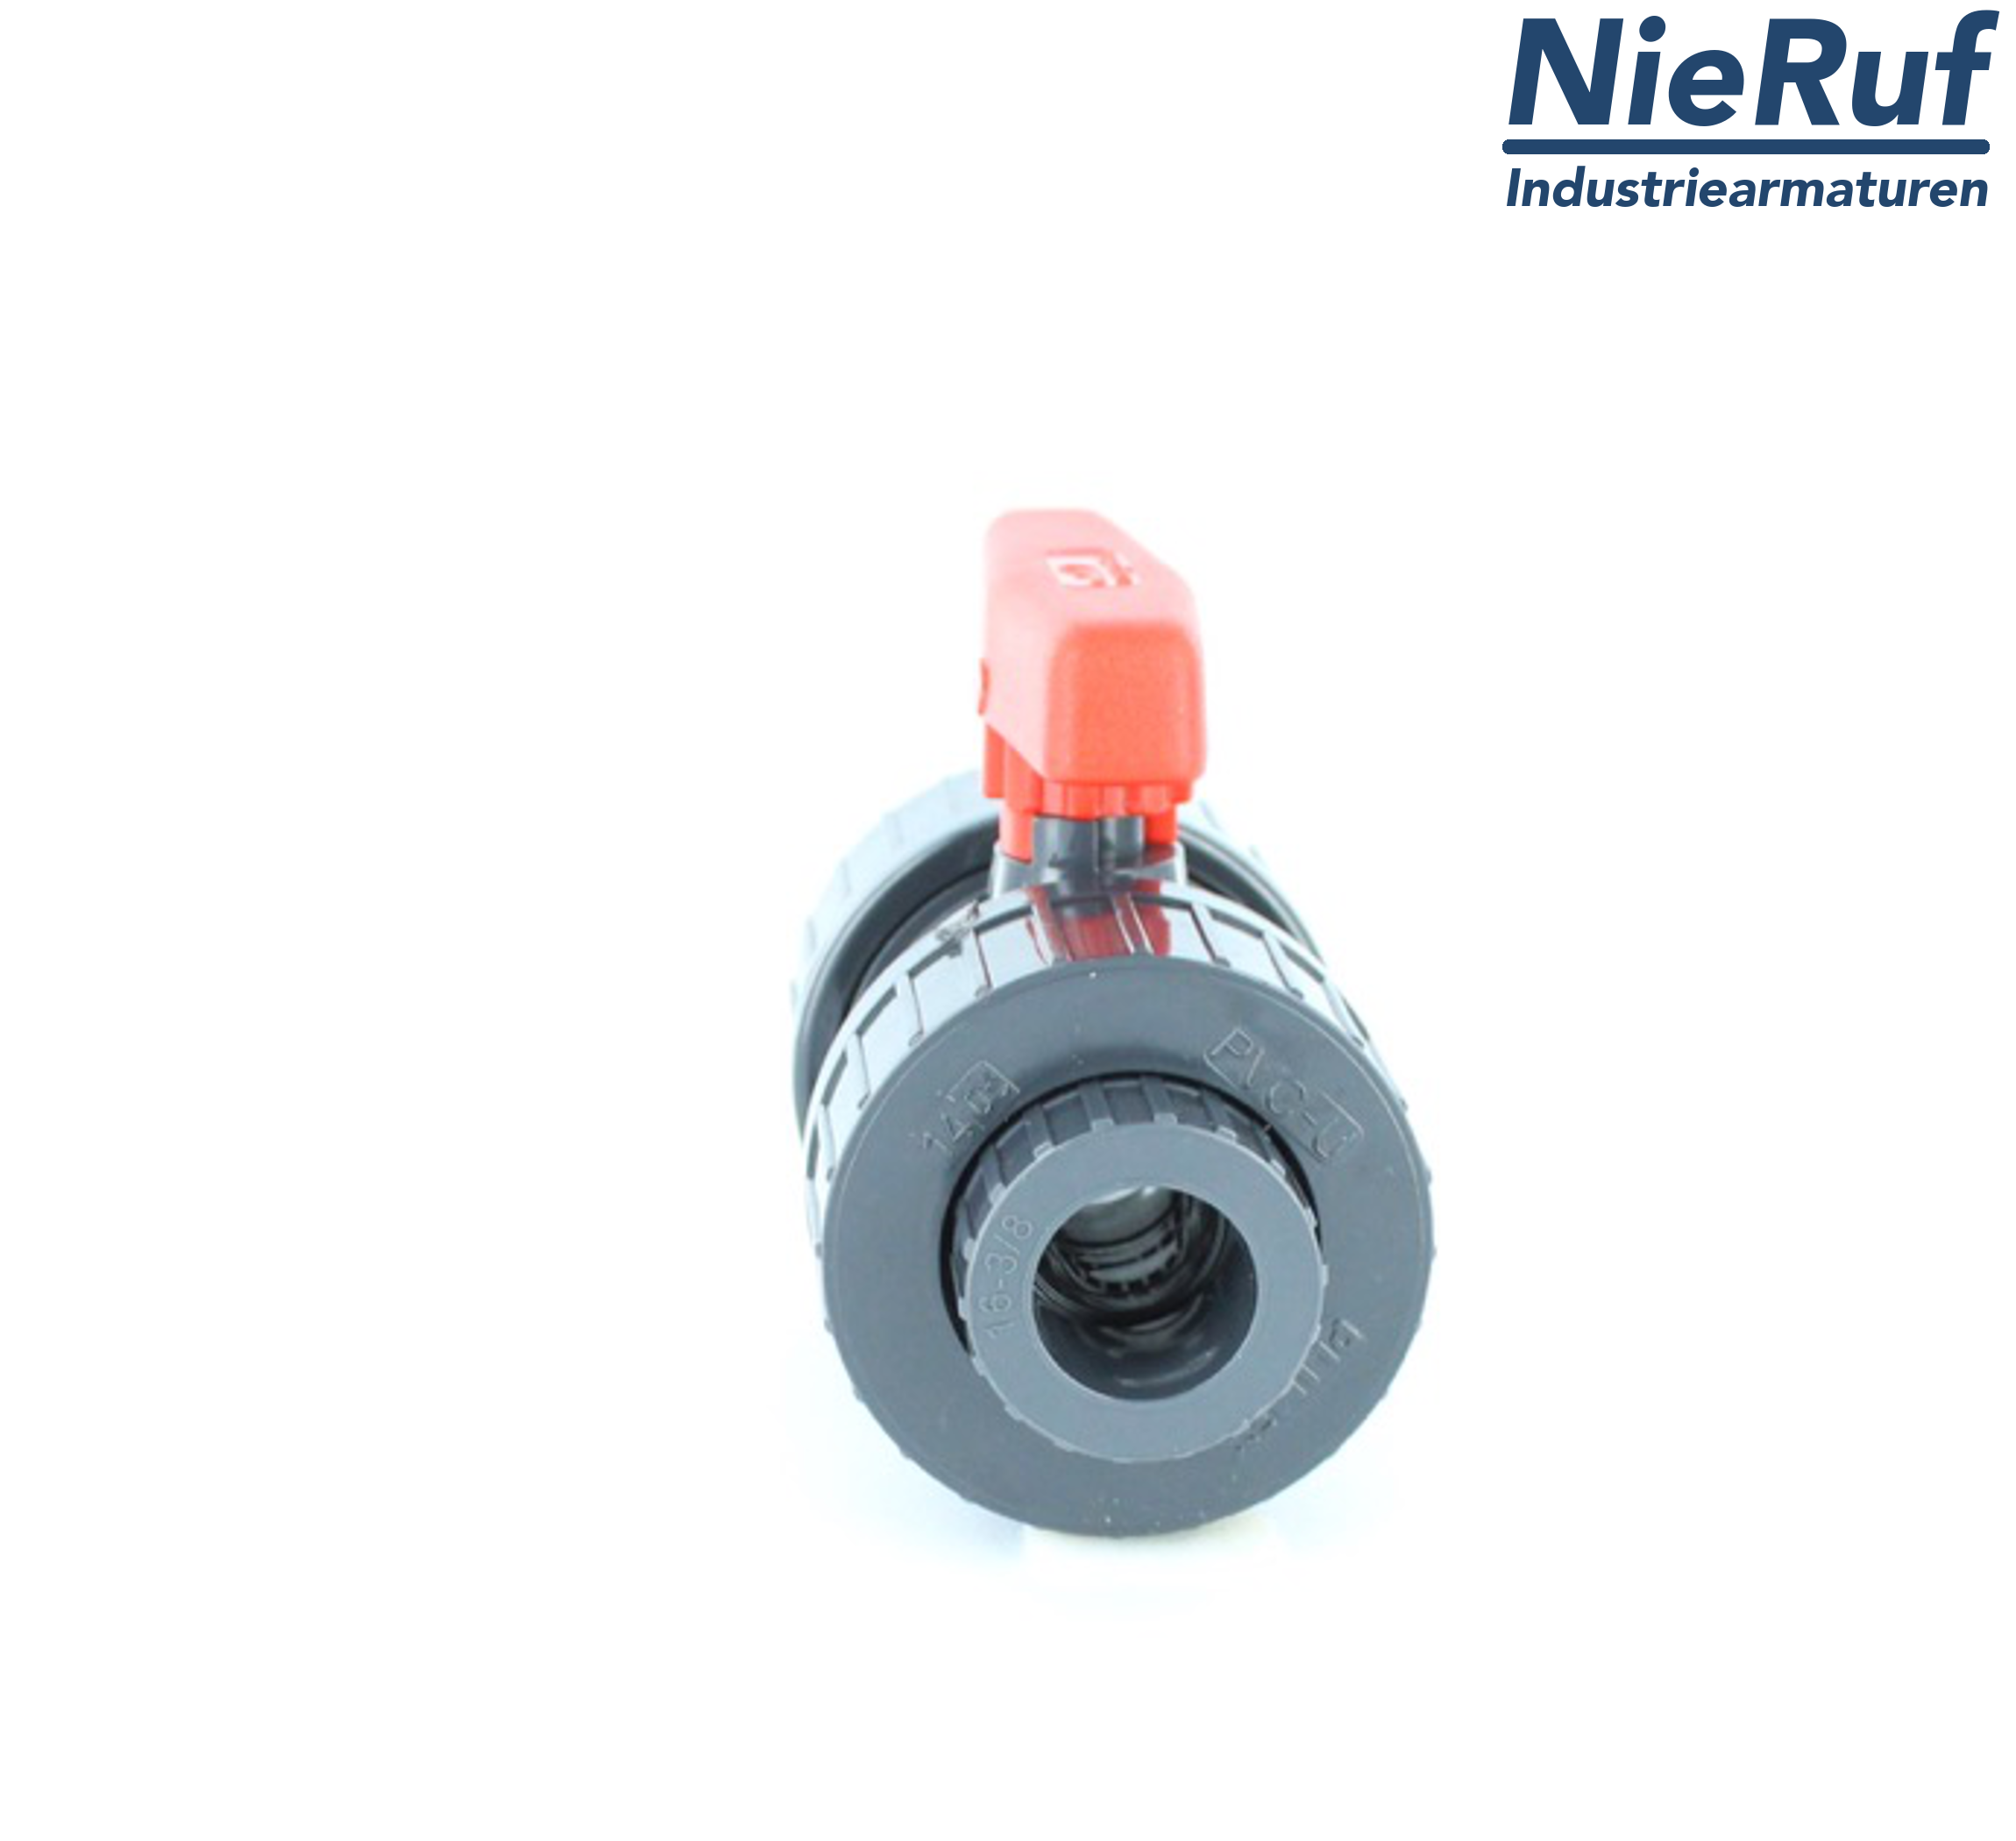 PVC-ball valve d 40 KK01 PTFE/Viton